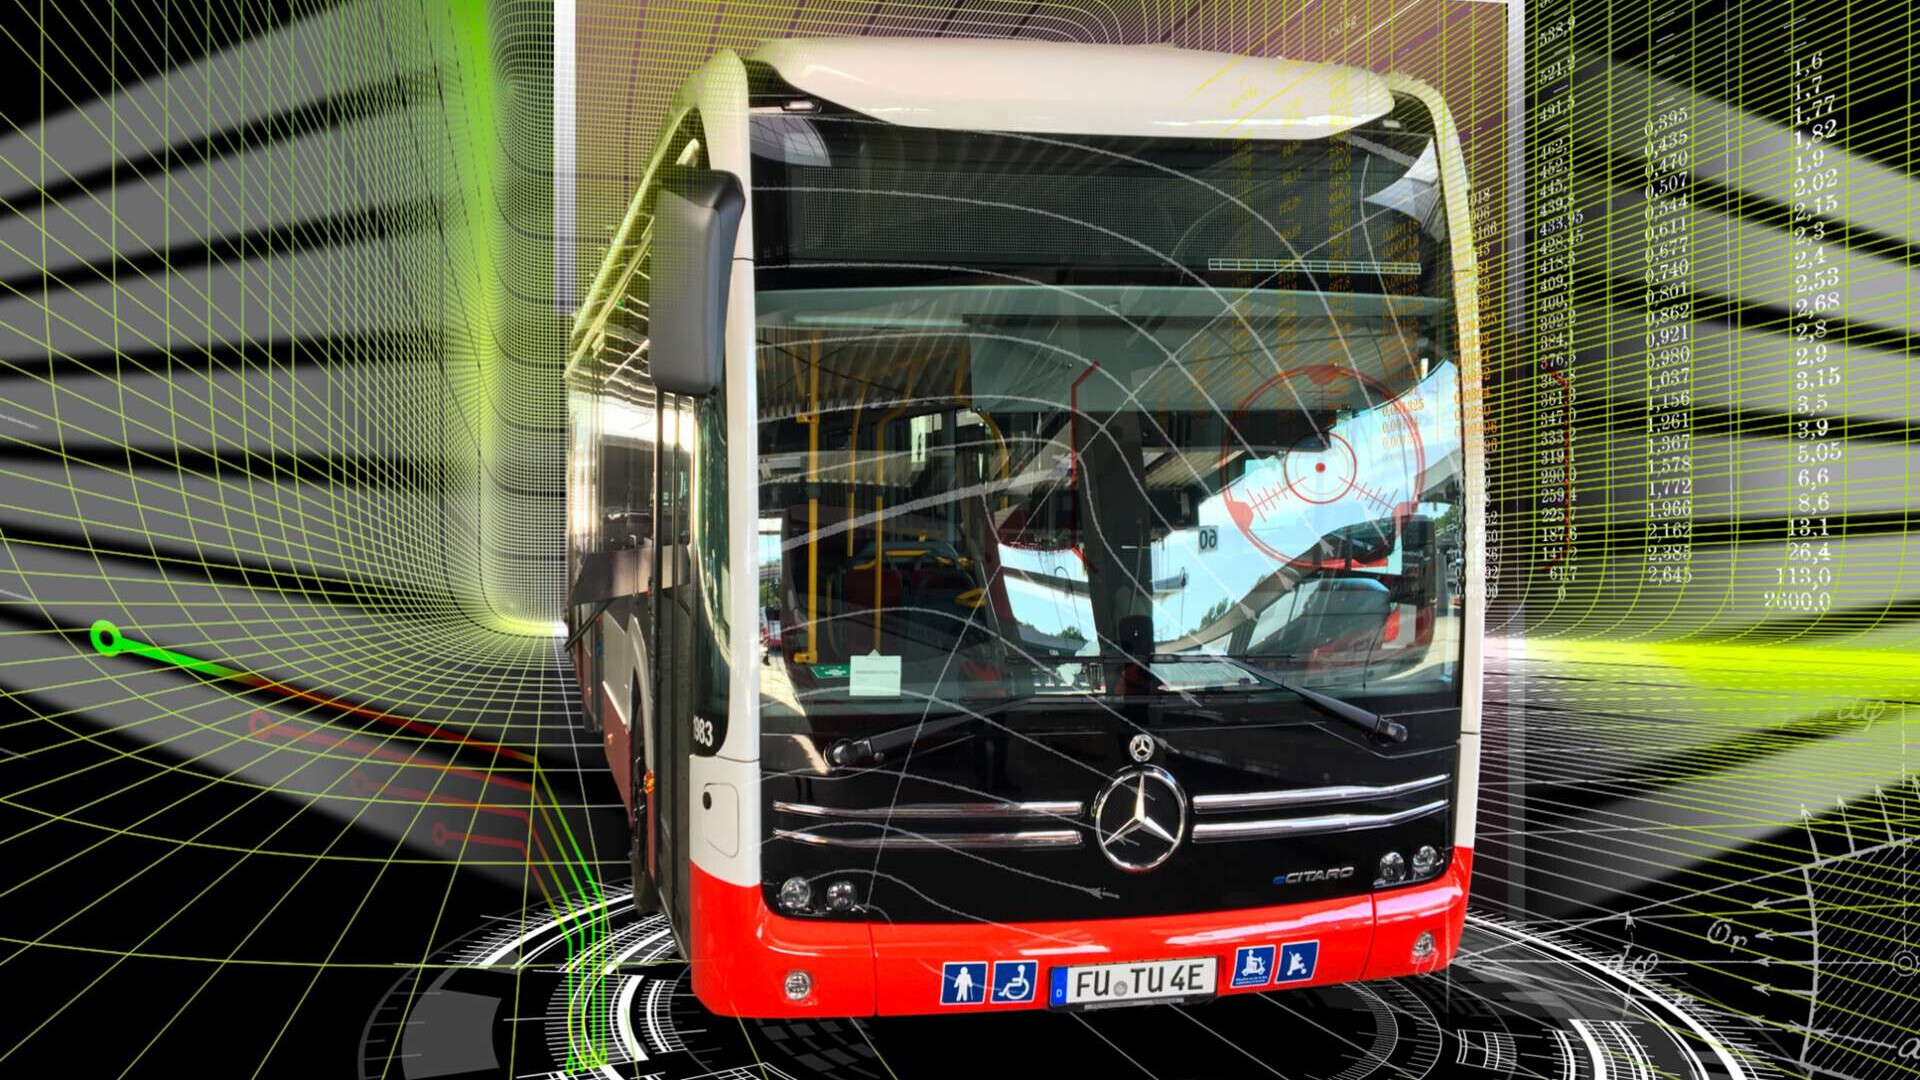 Branchenforum 2020 ÖPNV/Bahnen - Titelbild: Bus in abstrakt-futuristischem Raum als Symbol der neuen Formen der Arbeit im ÖPNV.